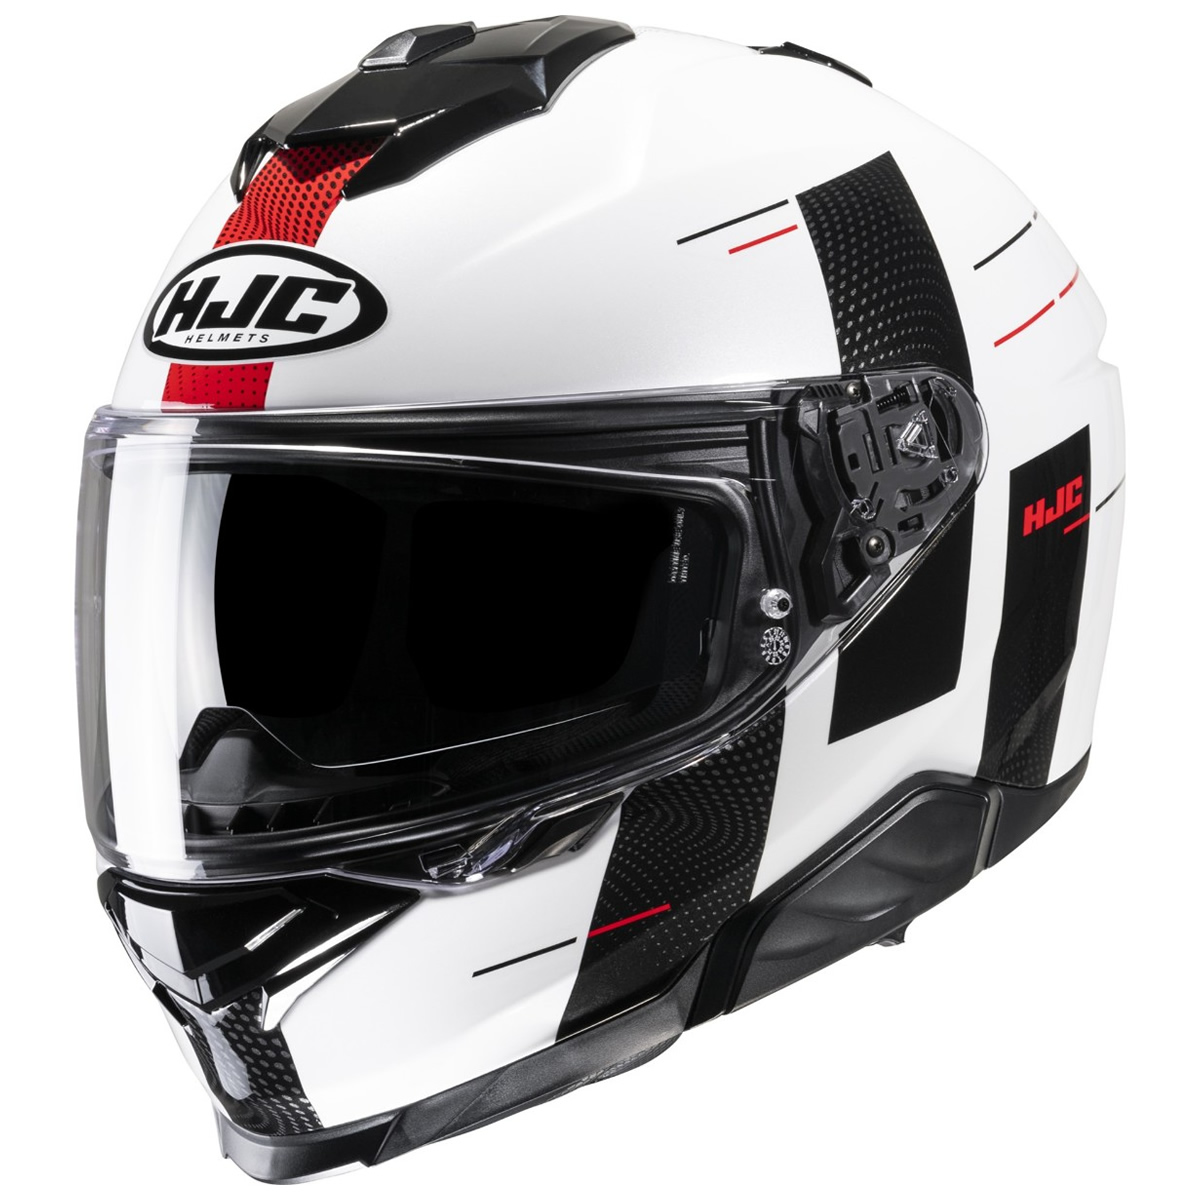 HJC Helm i71 Peka, weiß-schwarz-rot